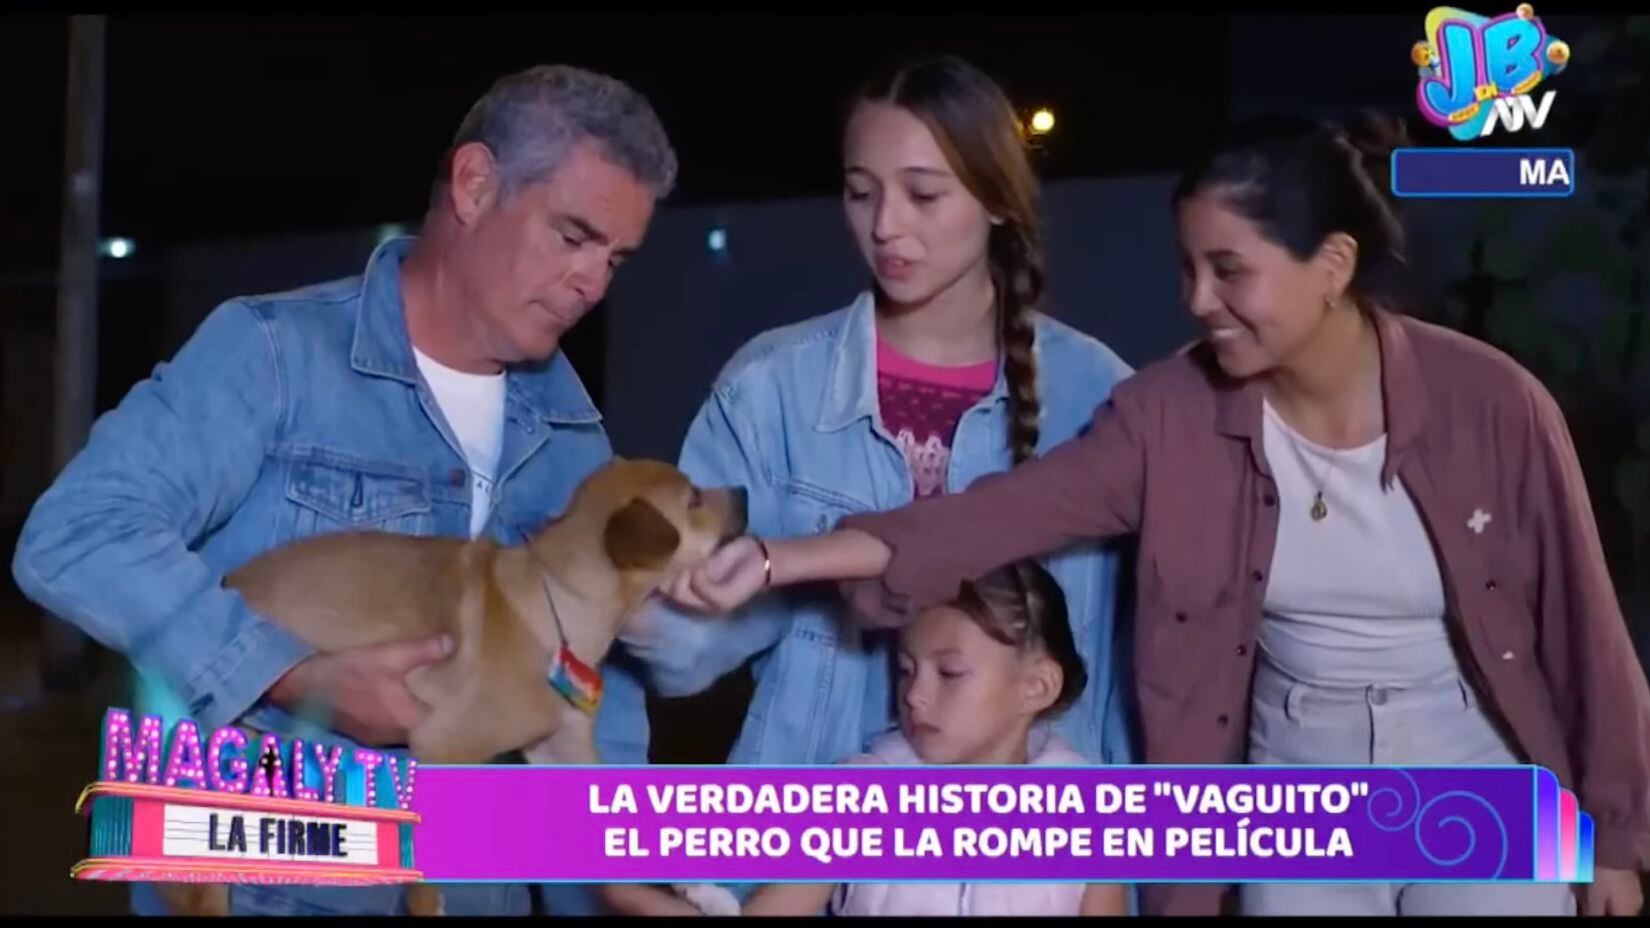 'Magaly TV La Firme' entrevistó a persona que cuida al perro que es interpretado en la película "Vaguito".